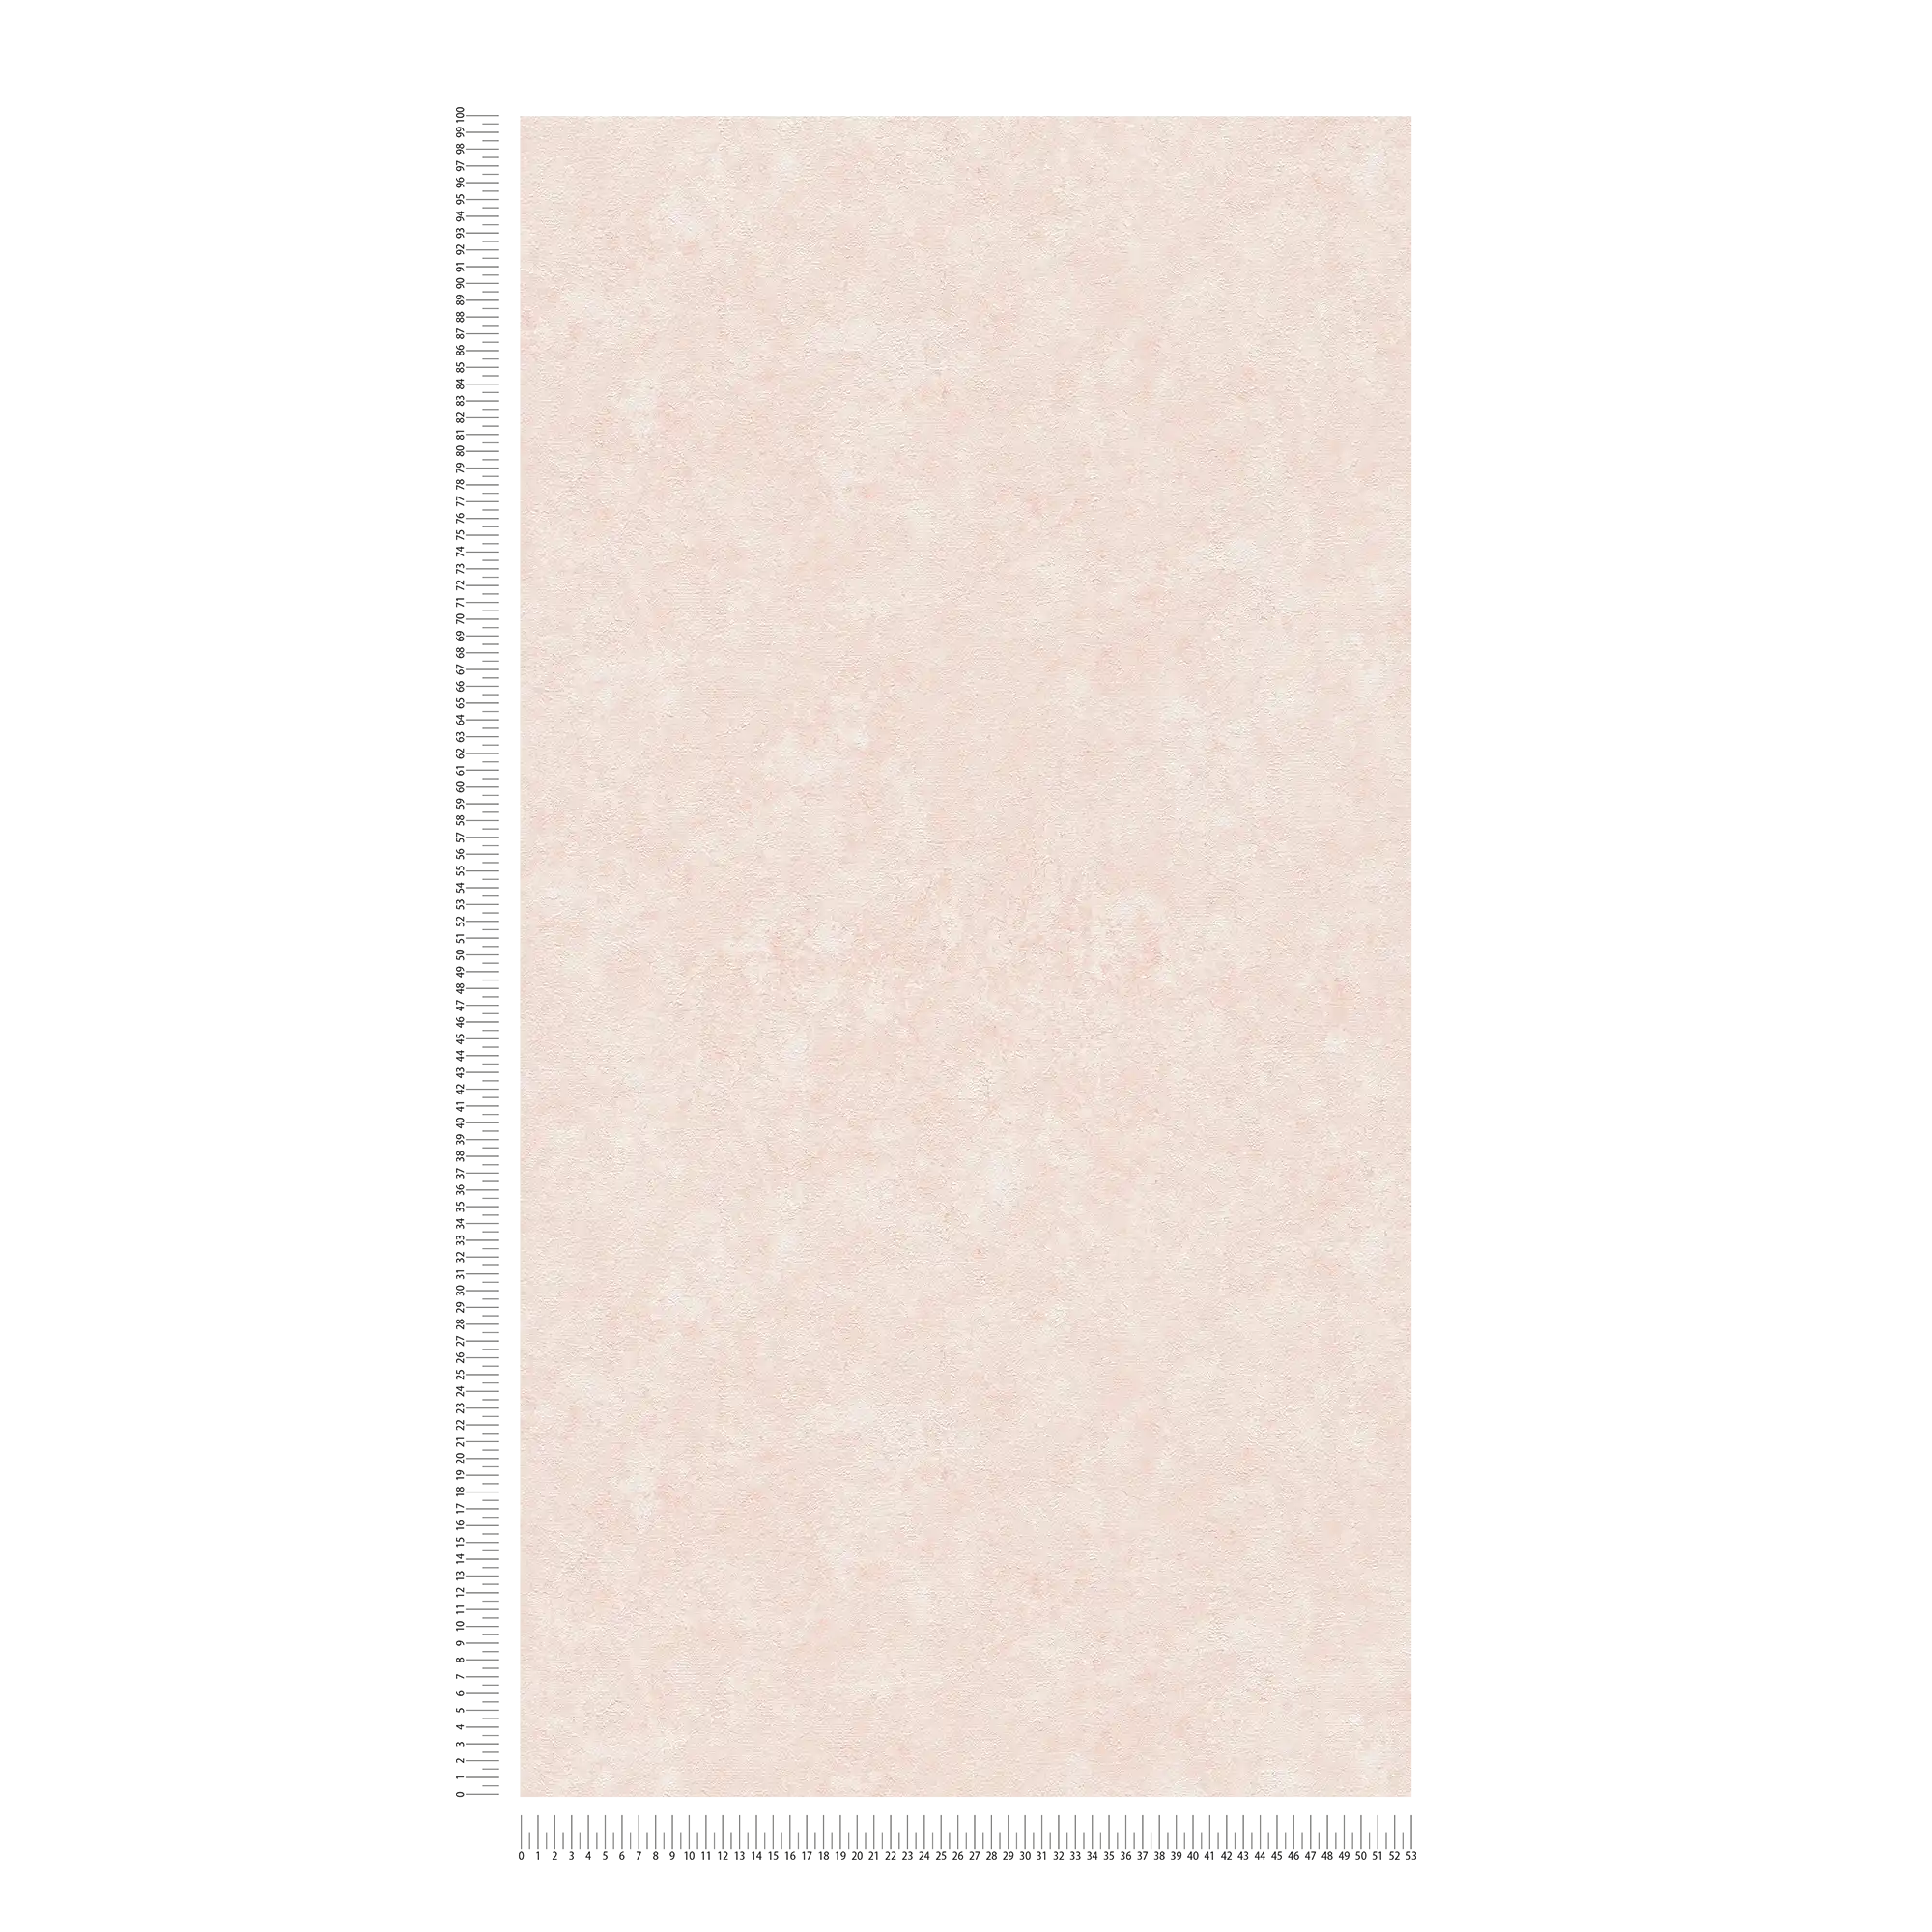             Effen structuurbehang in een subtiele kleur - wit, roze
        